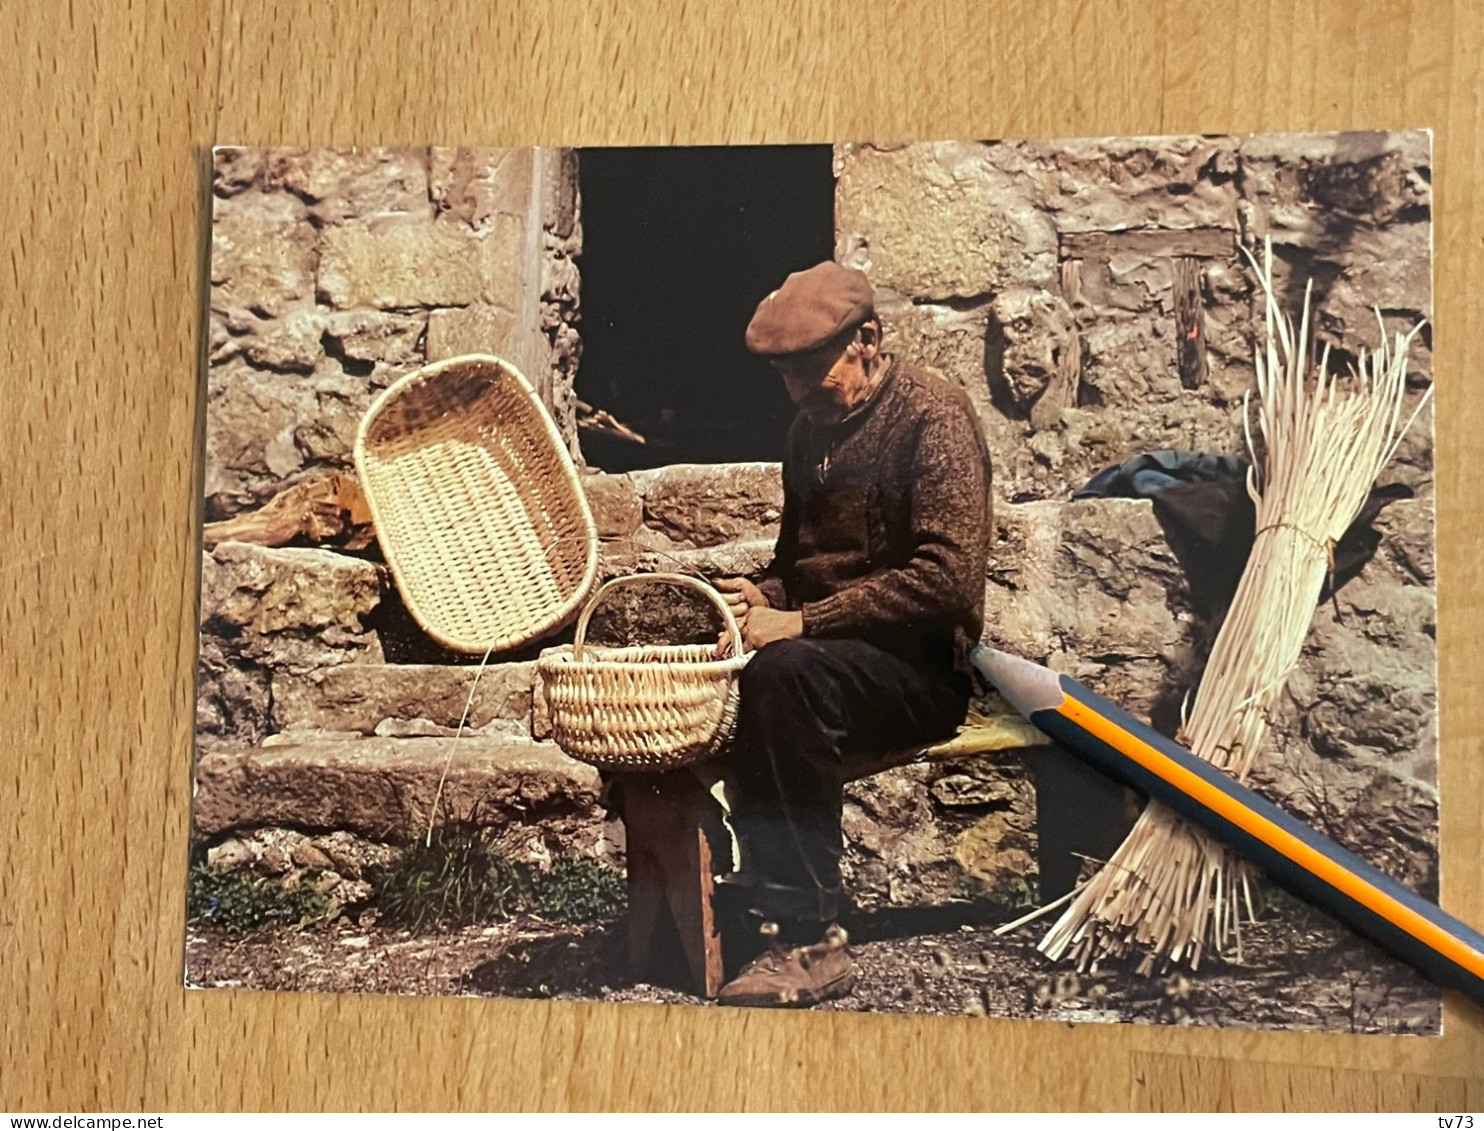 U1536 - Images De France Souvenir D'une Vie Simple Fabrication Artisanale Paniers Corbeilles - Vannier Artisanat Paysan - Farmers